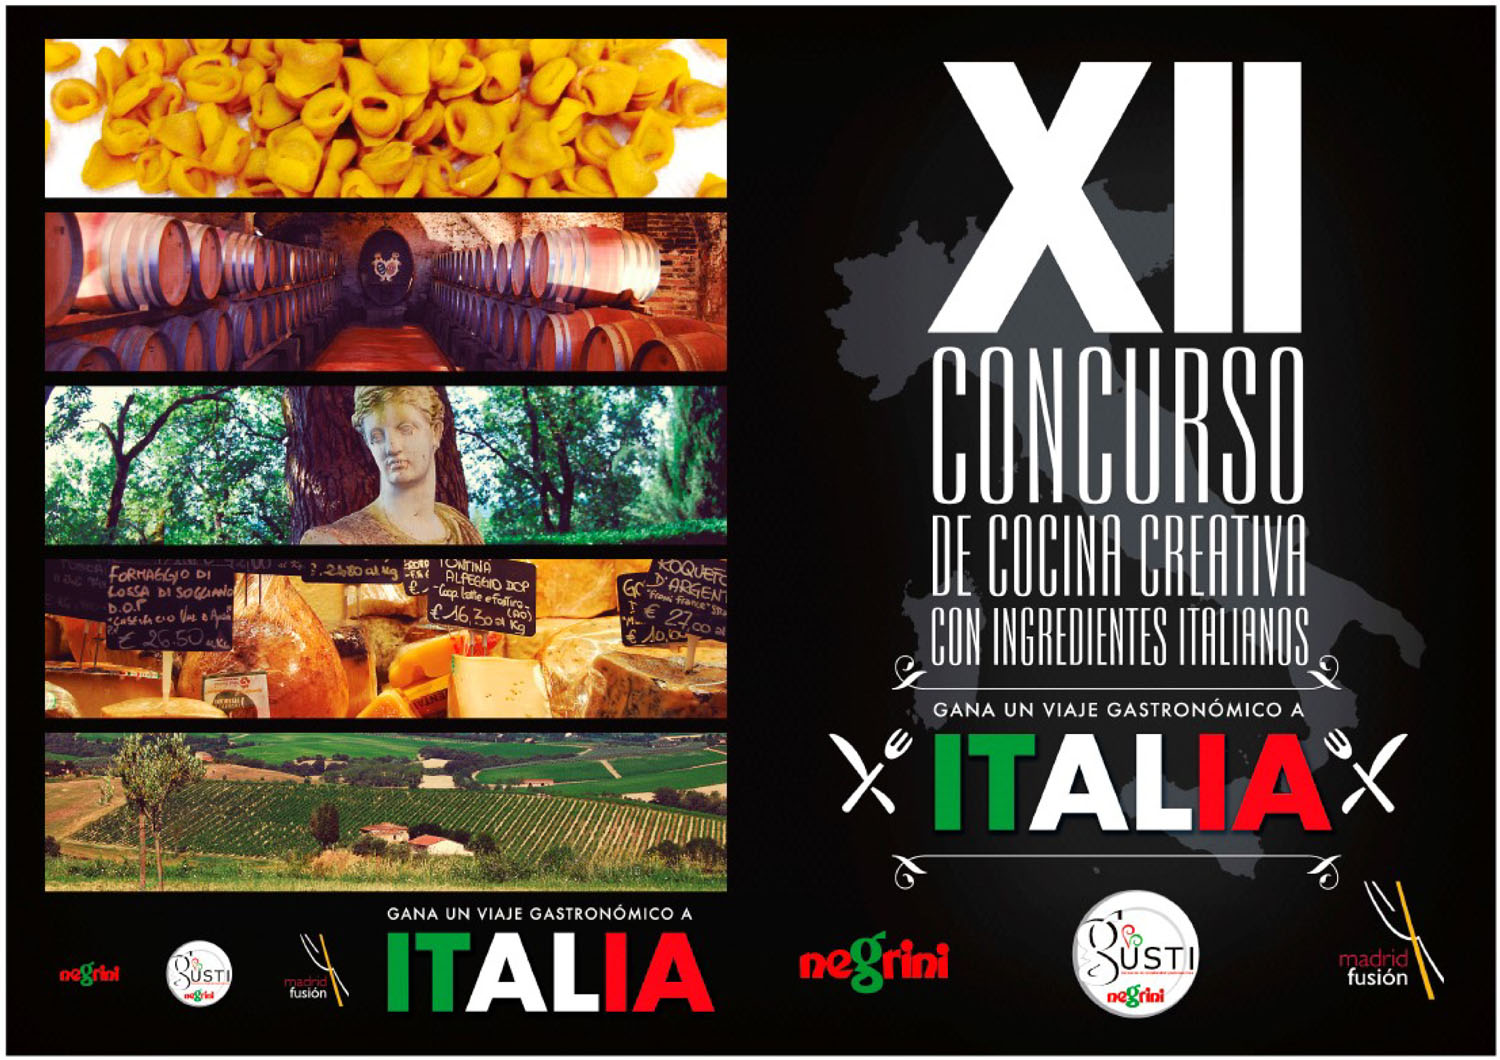 XII Concurso de Cocina Creativa con ingredientes italianos